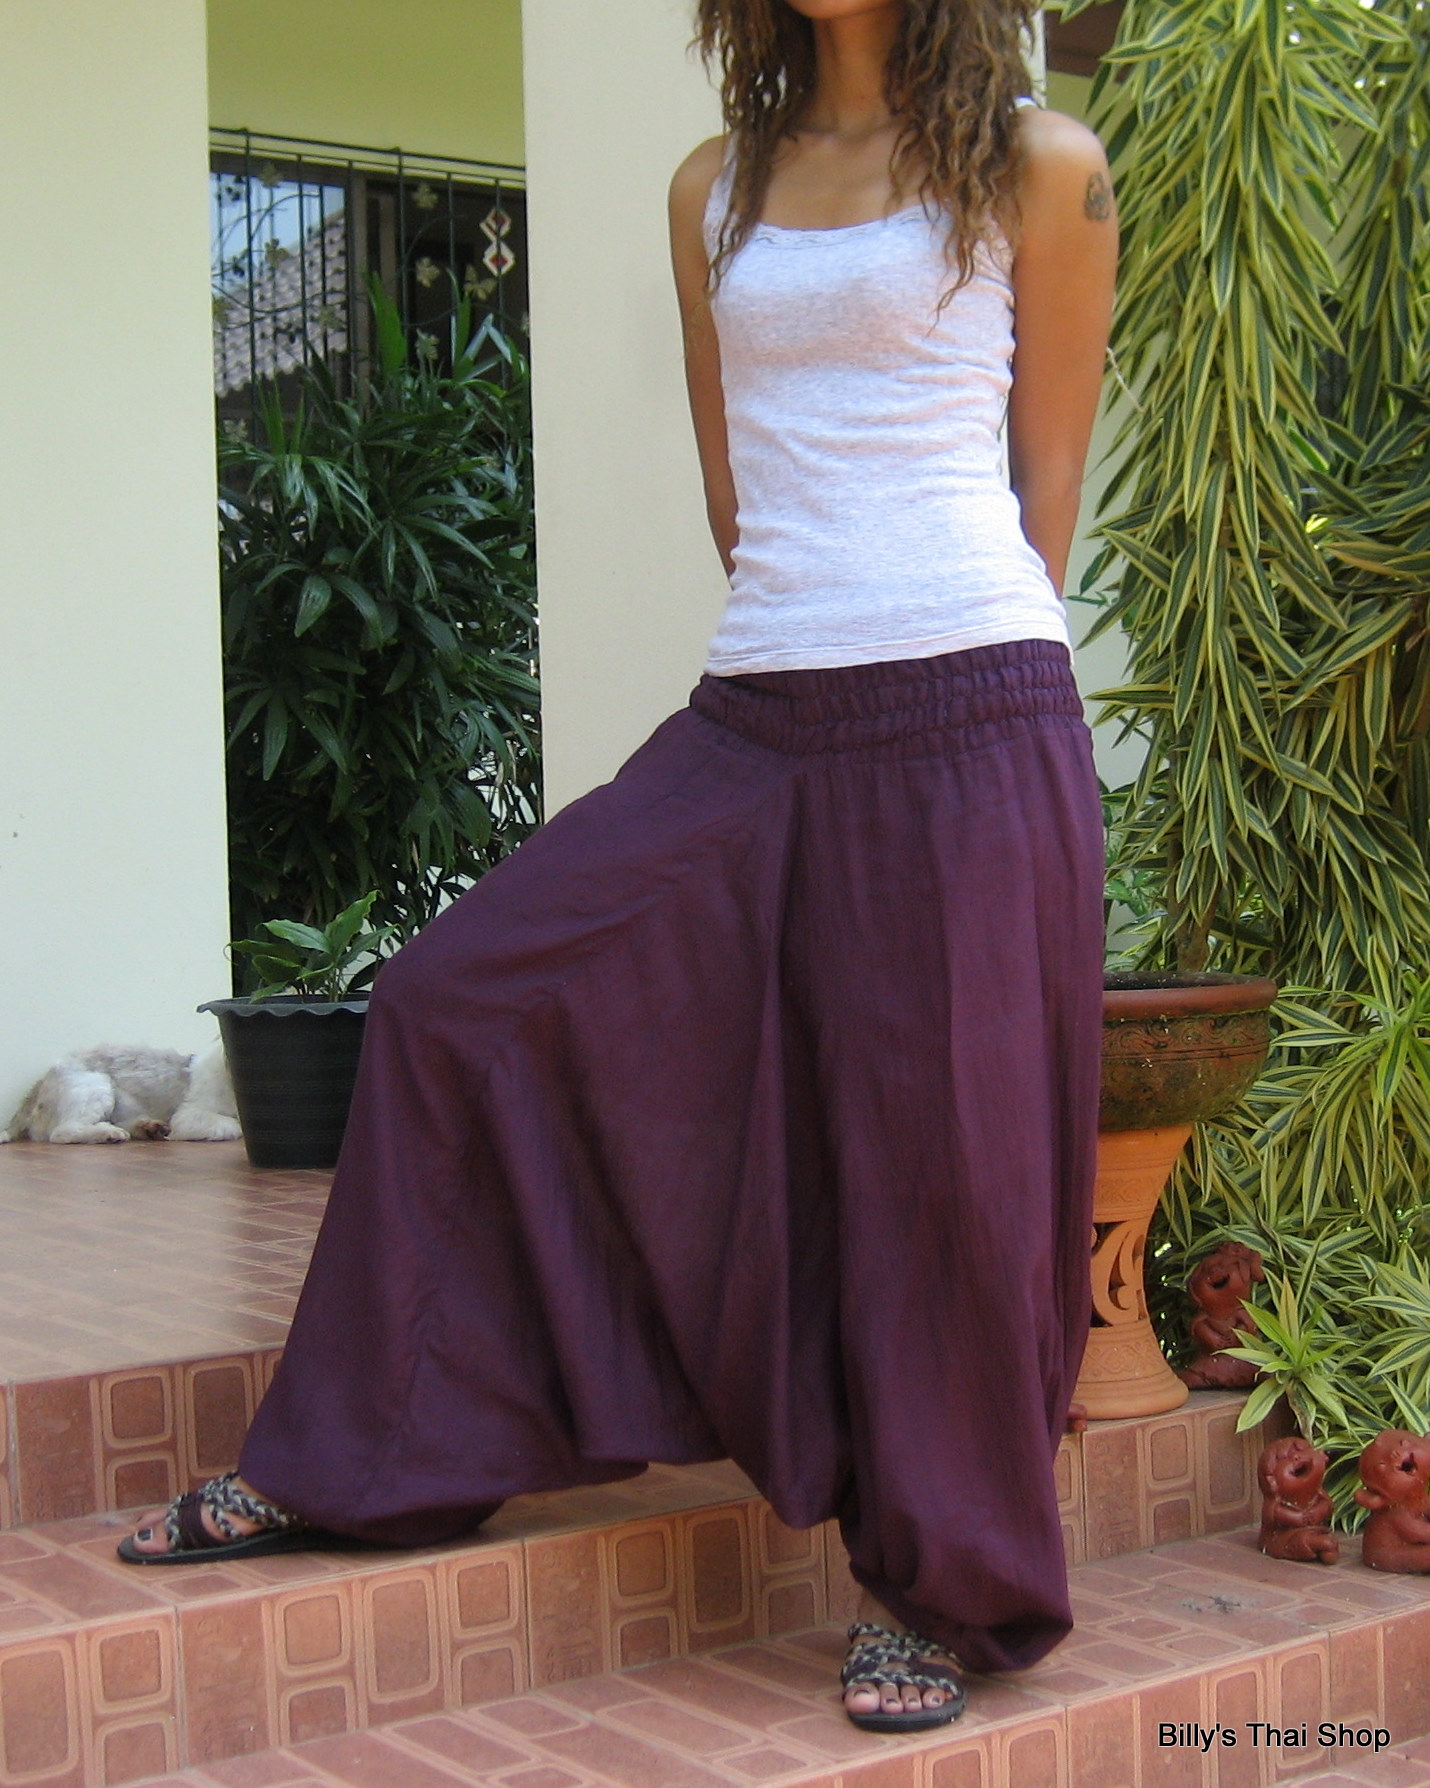 Harem Yoga Pants - Billys Thai Shop - Handmade And Free Shipping